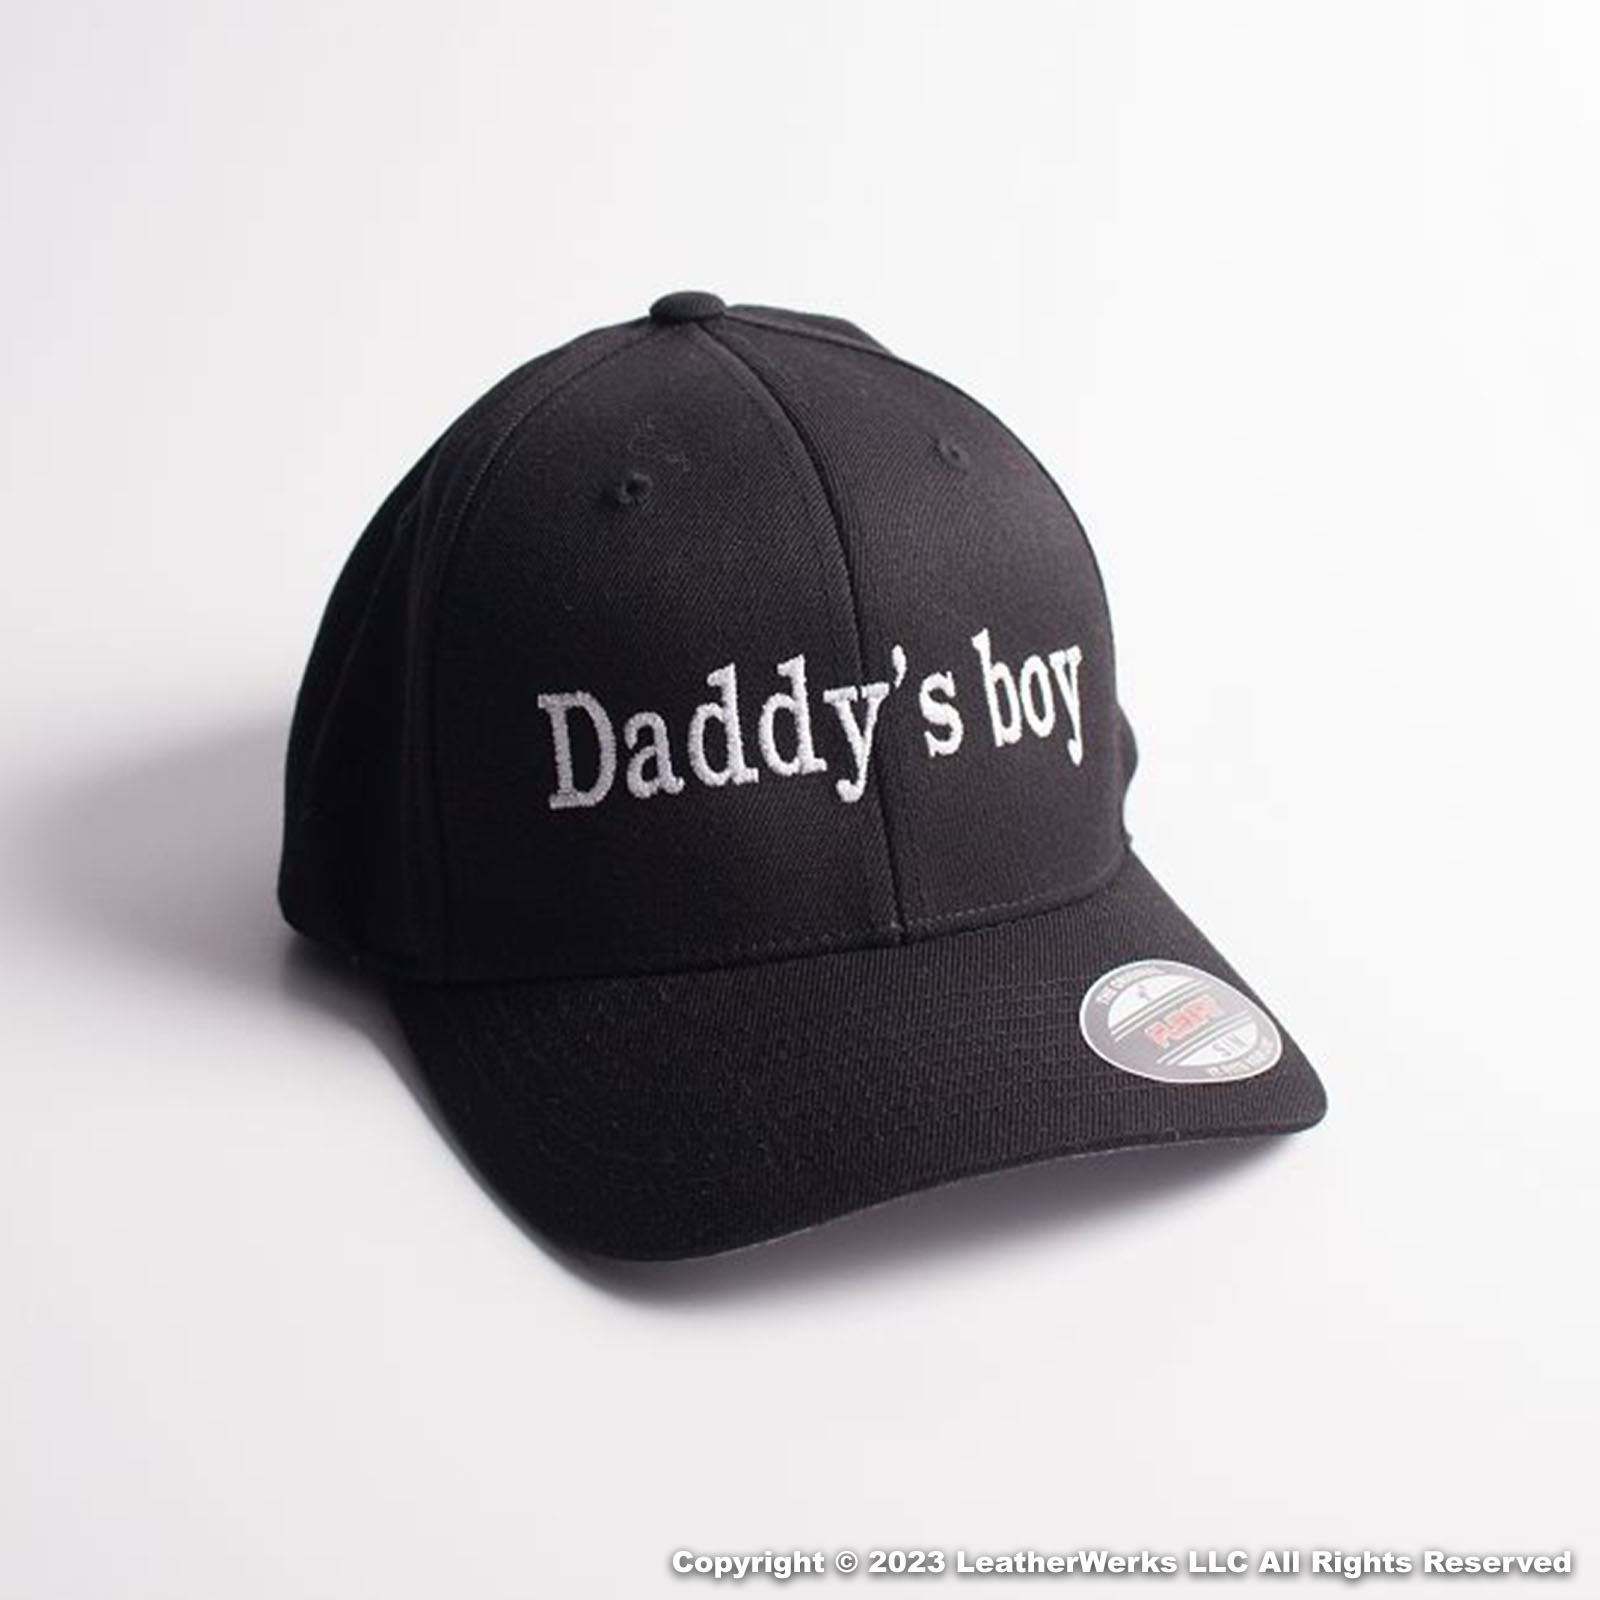 Daddys boy Flexfit Cap